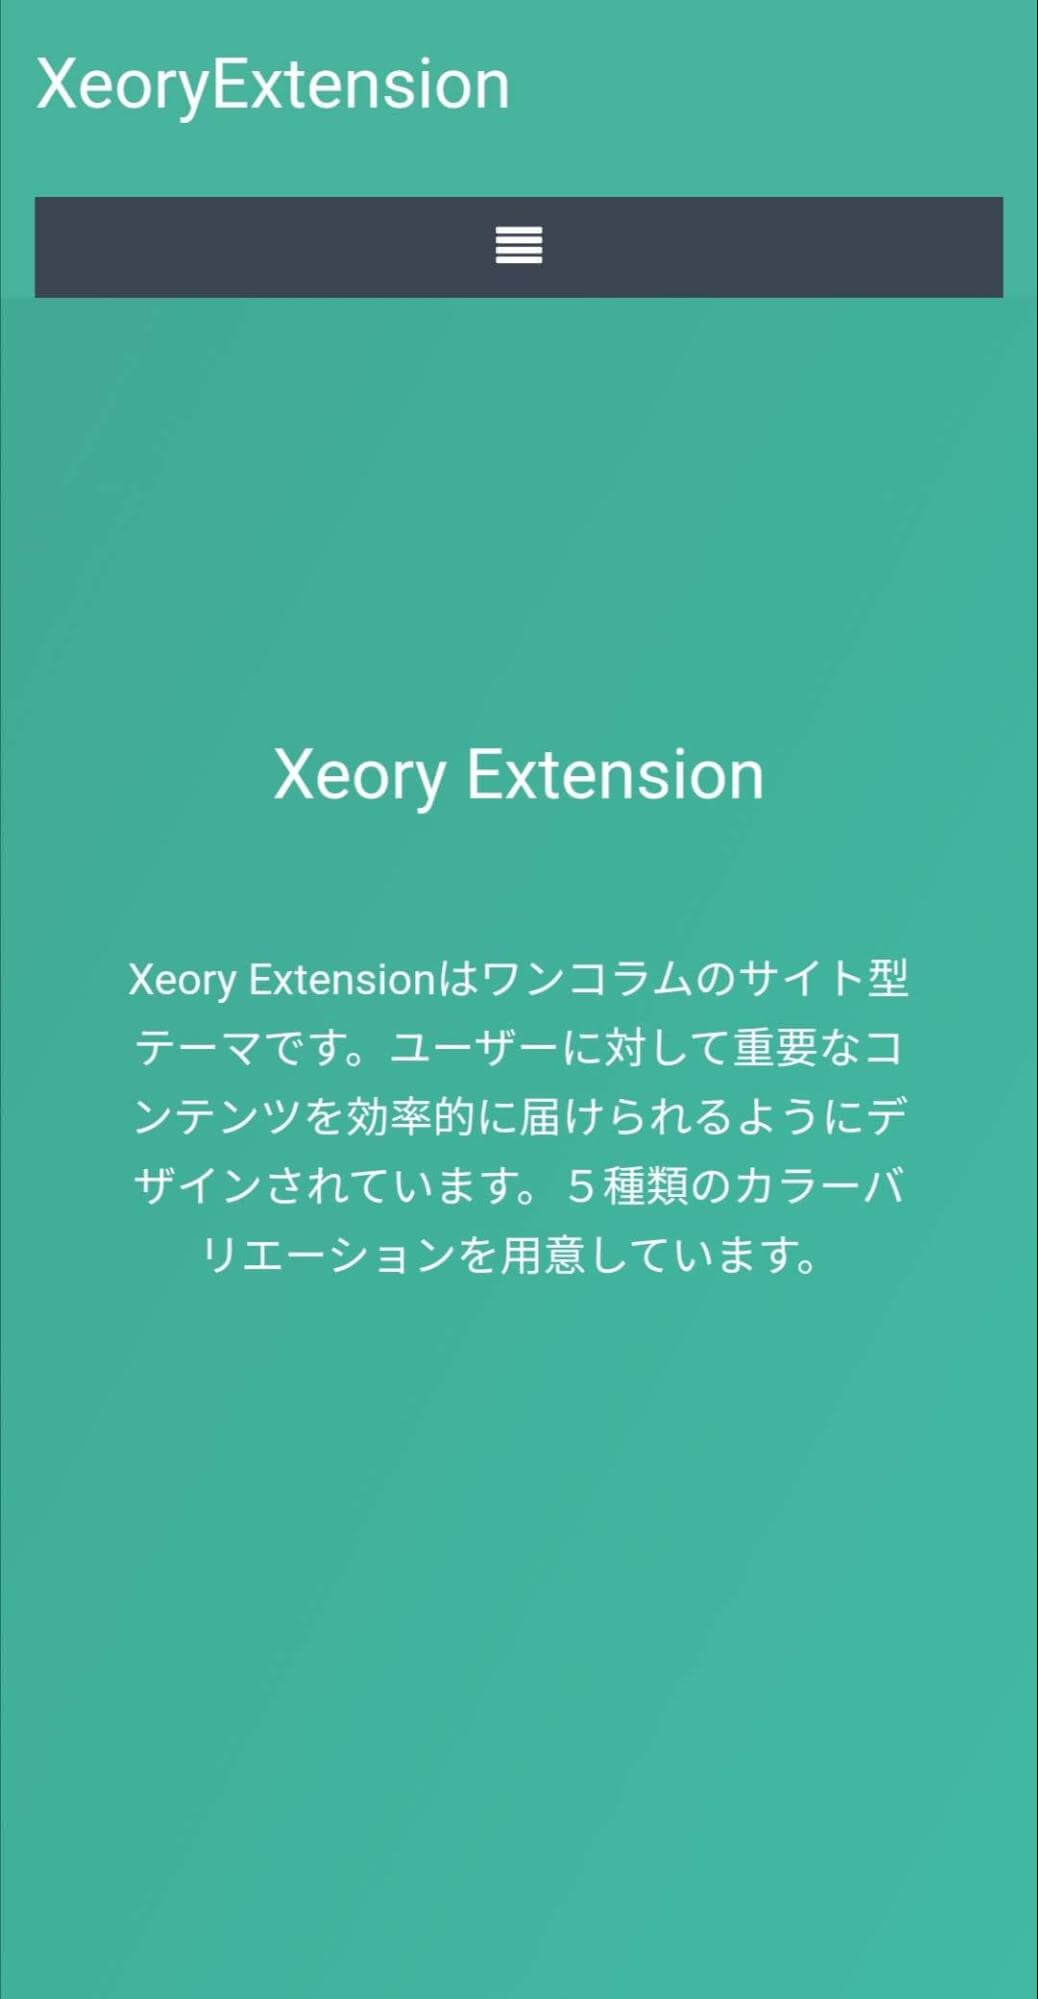 ▲スマホから見たXeory Extensionトップページの画像